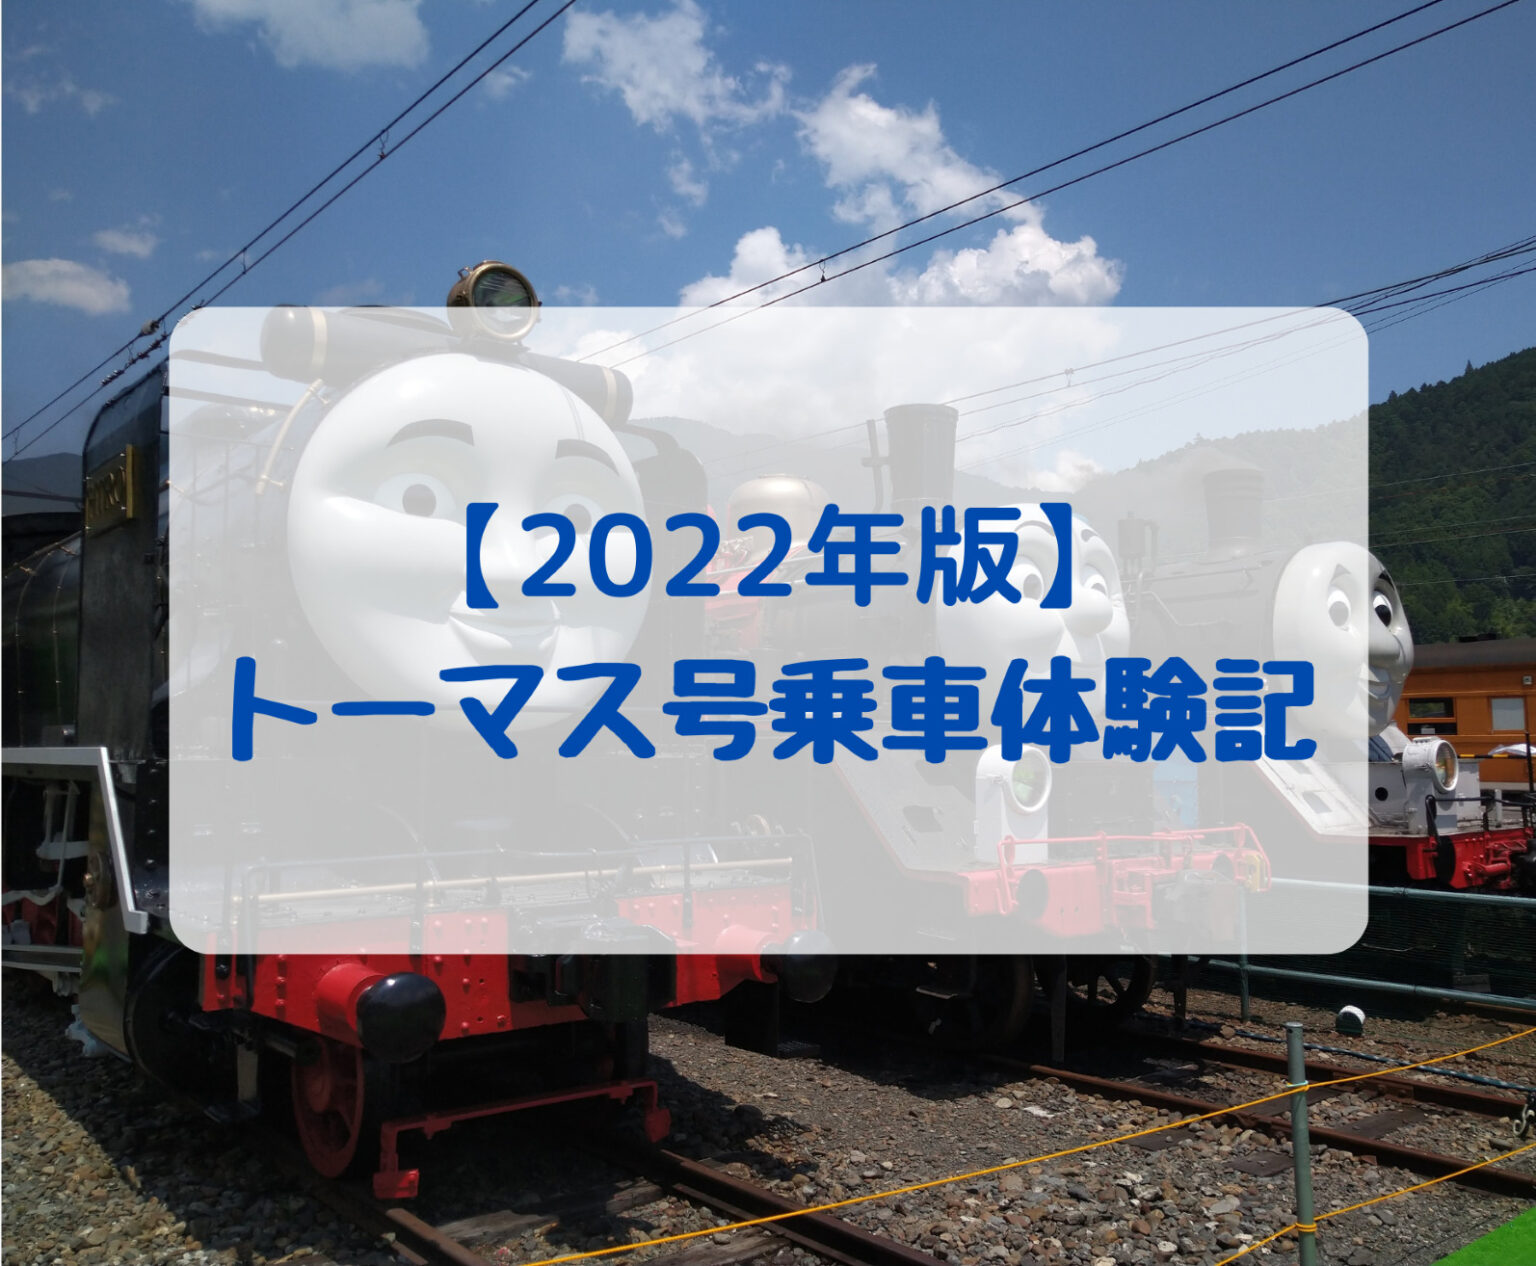 2022年大井川鉄道トーマス号